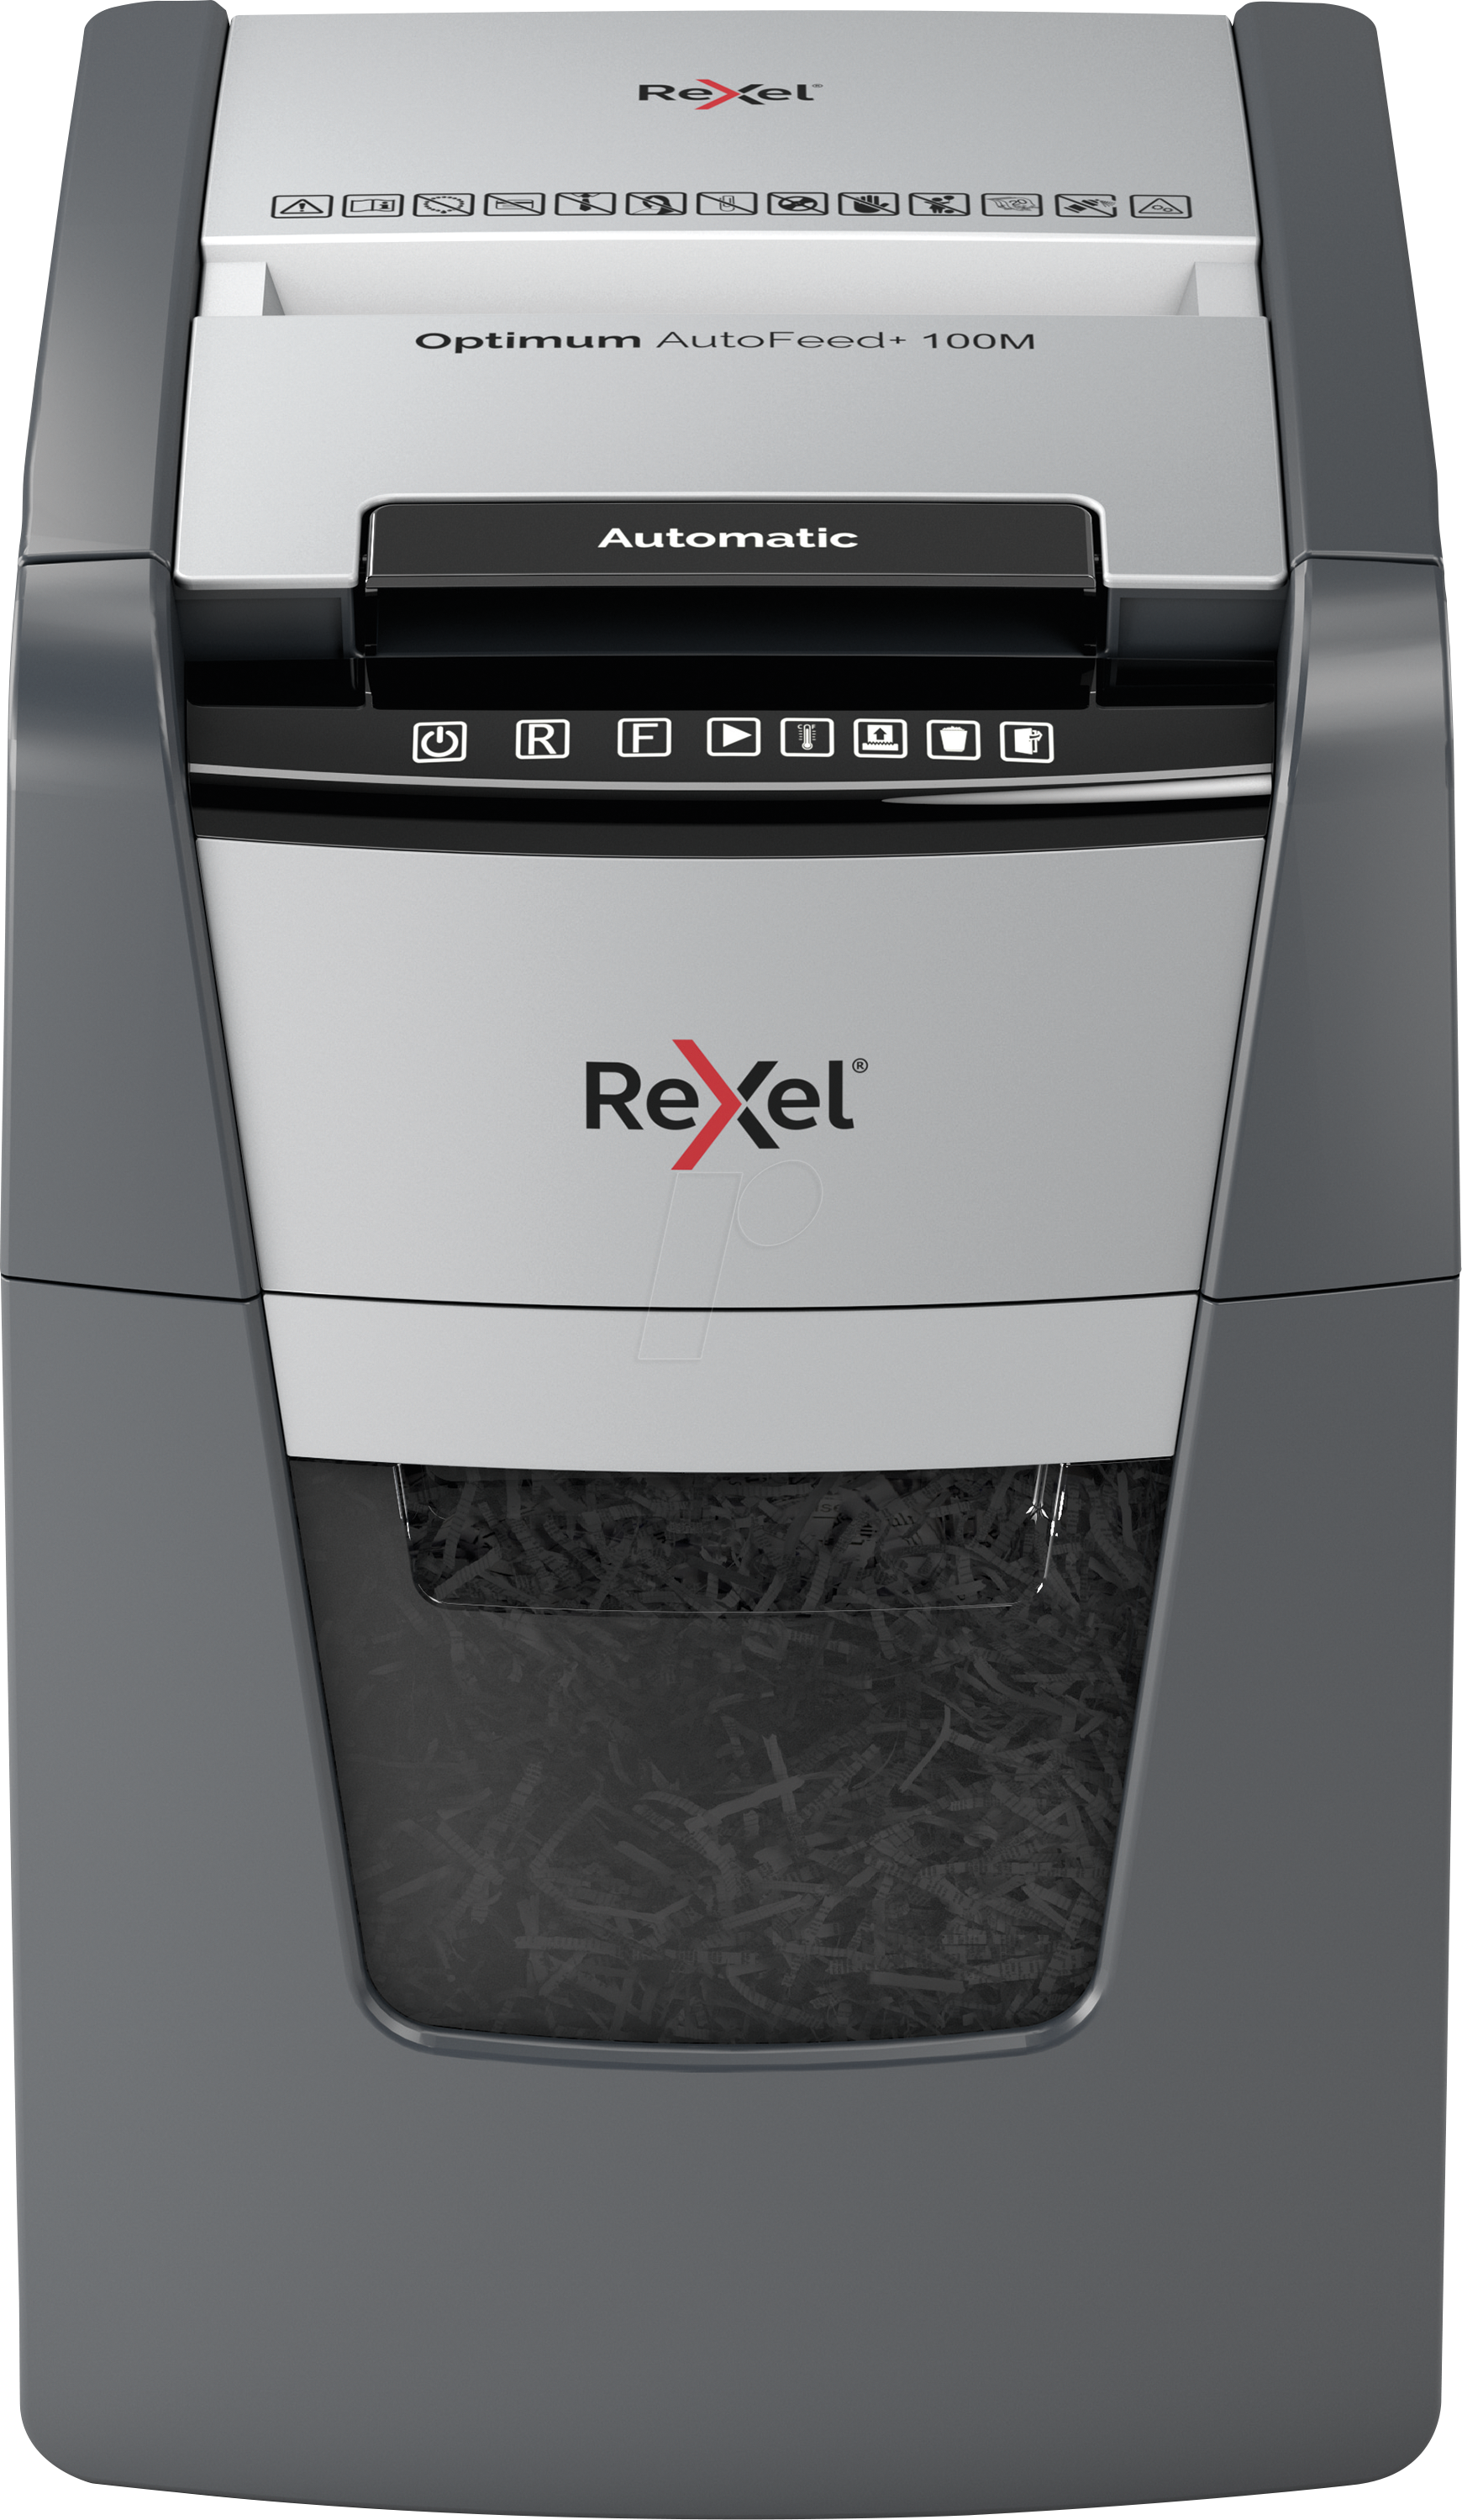 REXEL 2020100MEU - Aktenvernichter, AutoFeed+ 100M, Mikro-Schnitt, P-5, 34l von Rexel